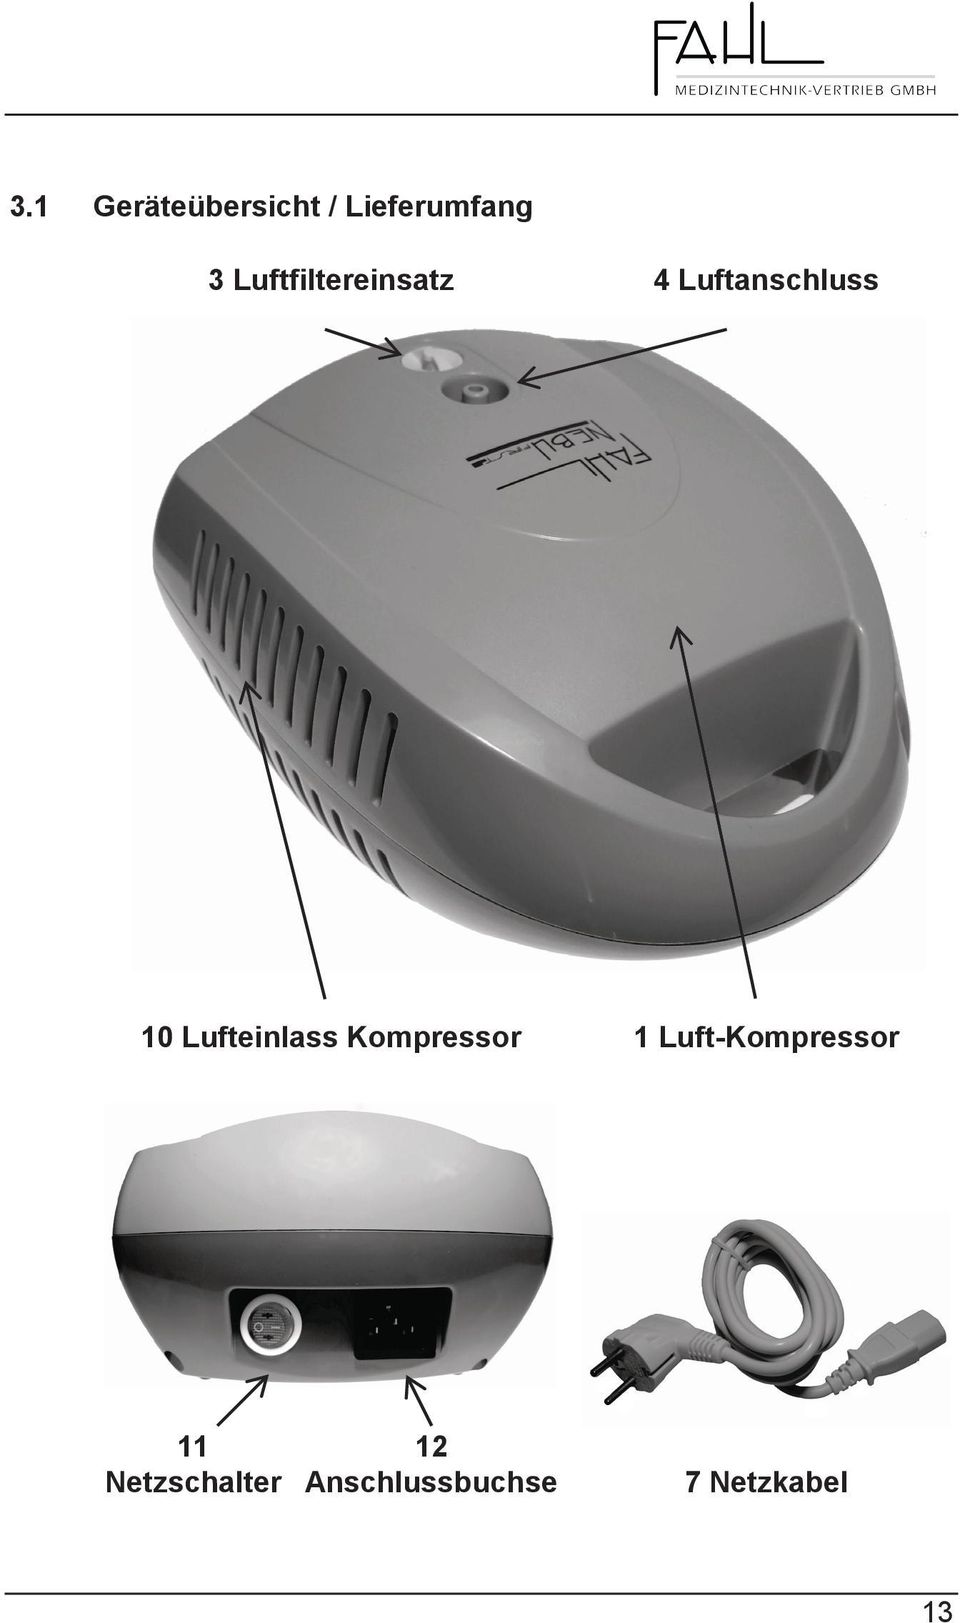 Lufteinlass Kompressor 1 Luft-Kompressor